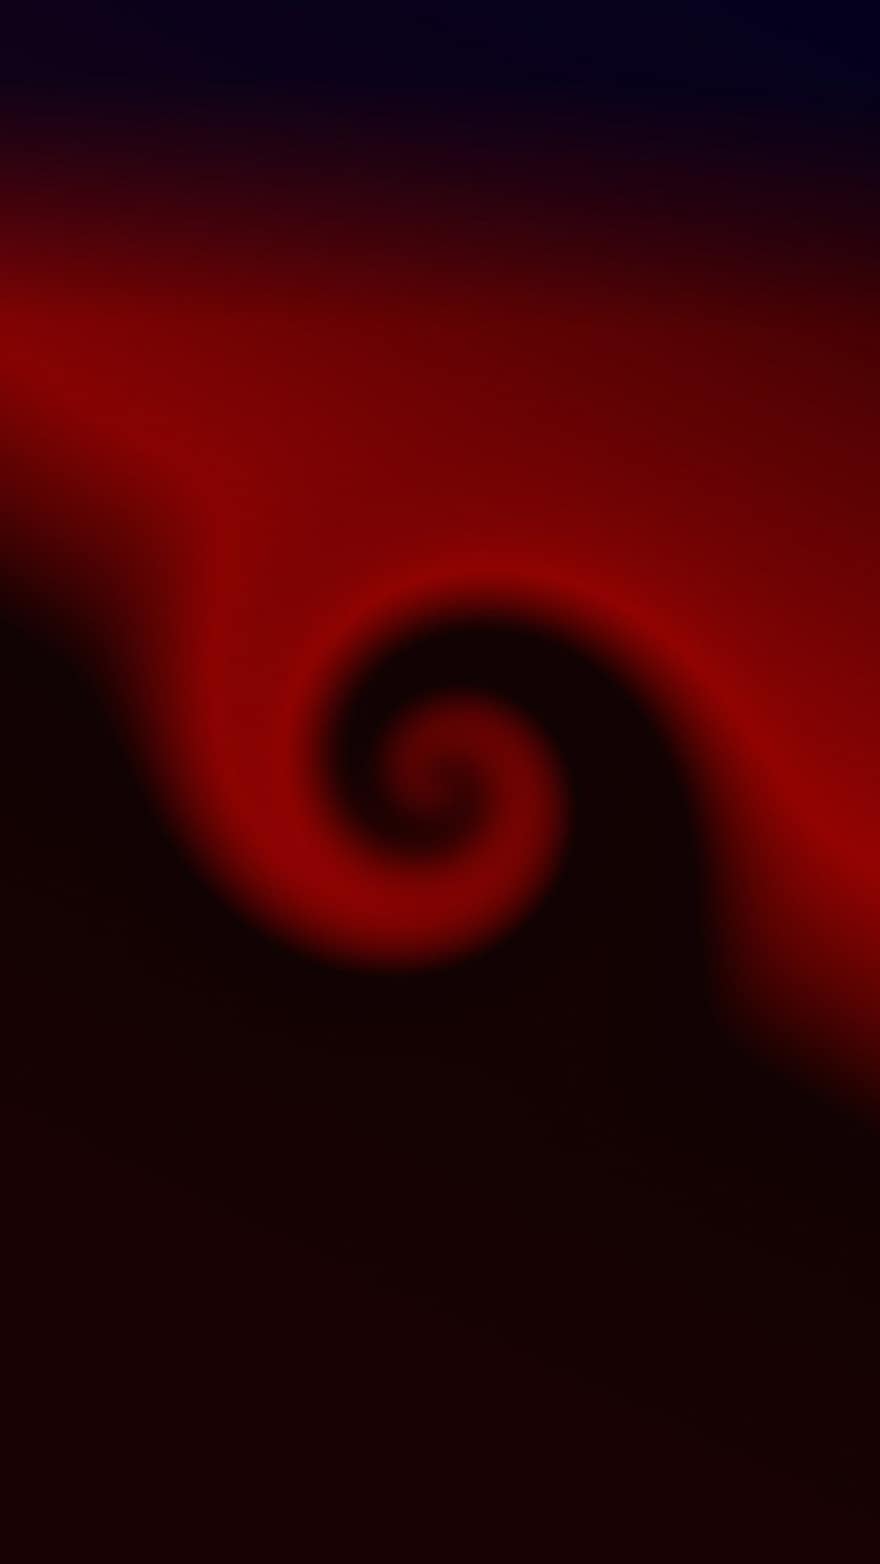 spirala, tło, czarny, czerwony, abstrakcyjny